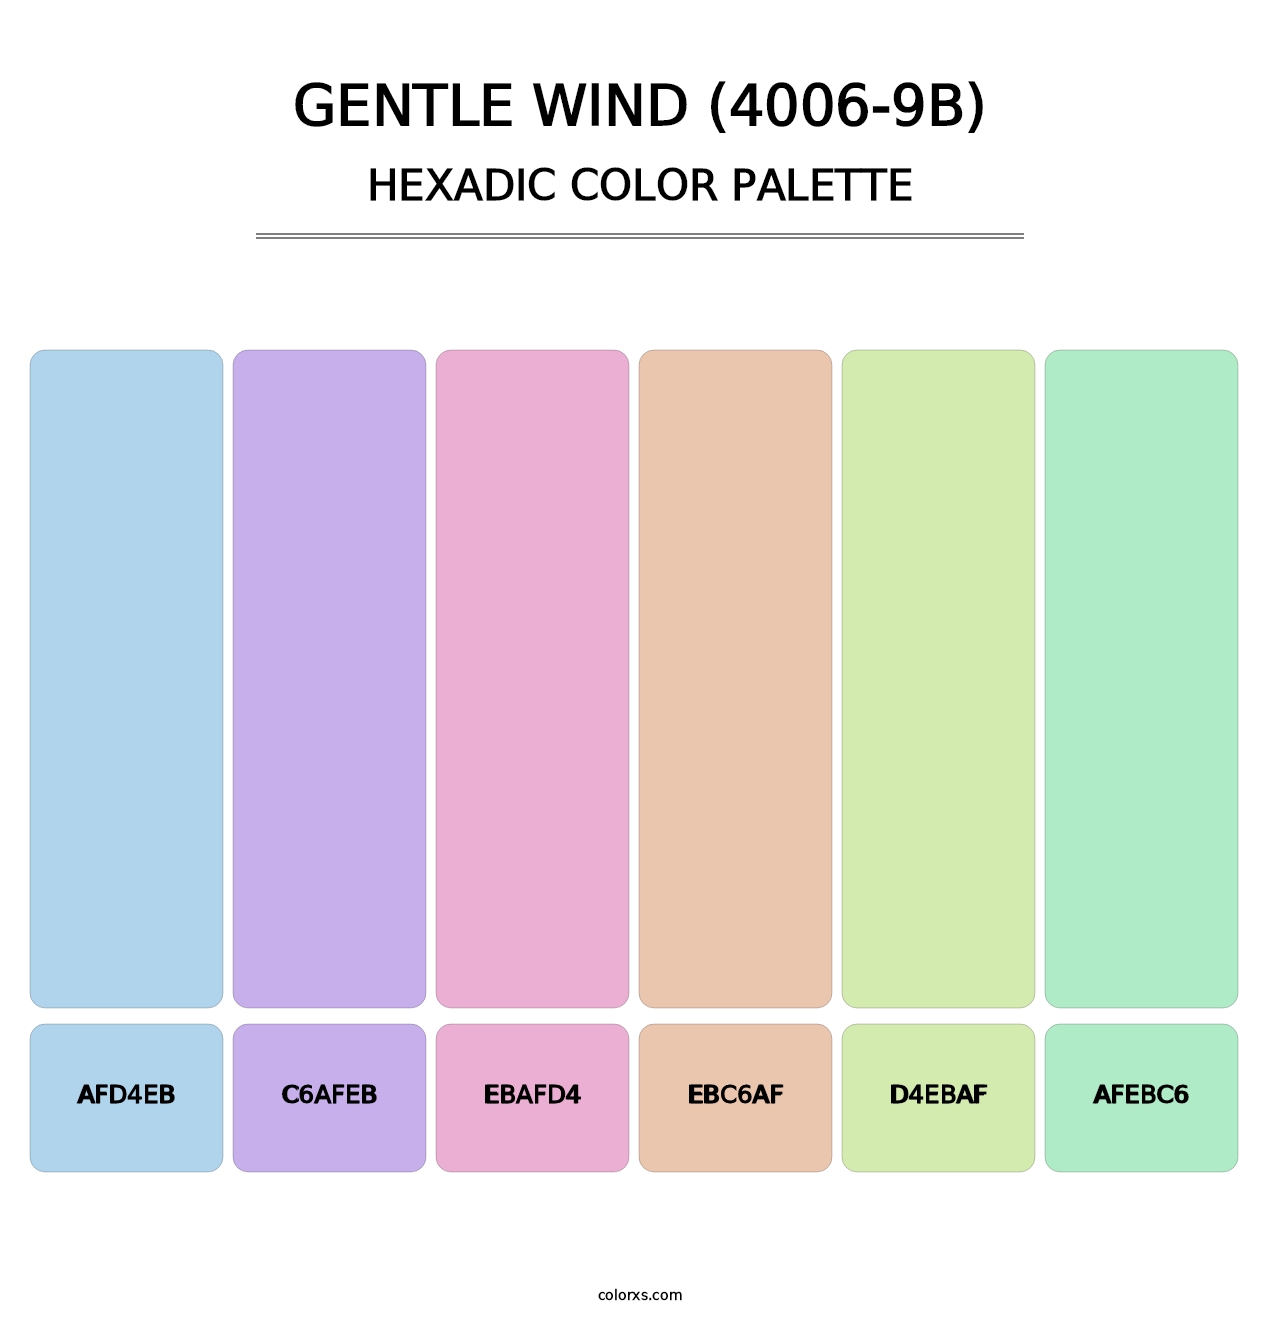 Gentle Wind (4006-9B) - Hexadic Color Palette